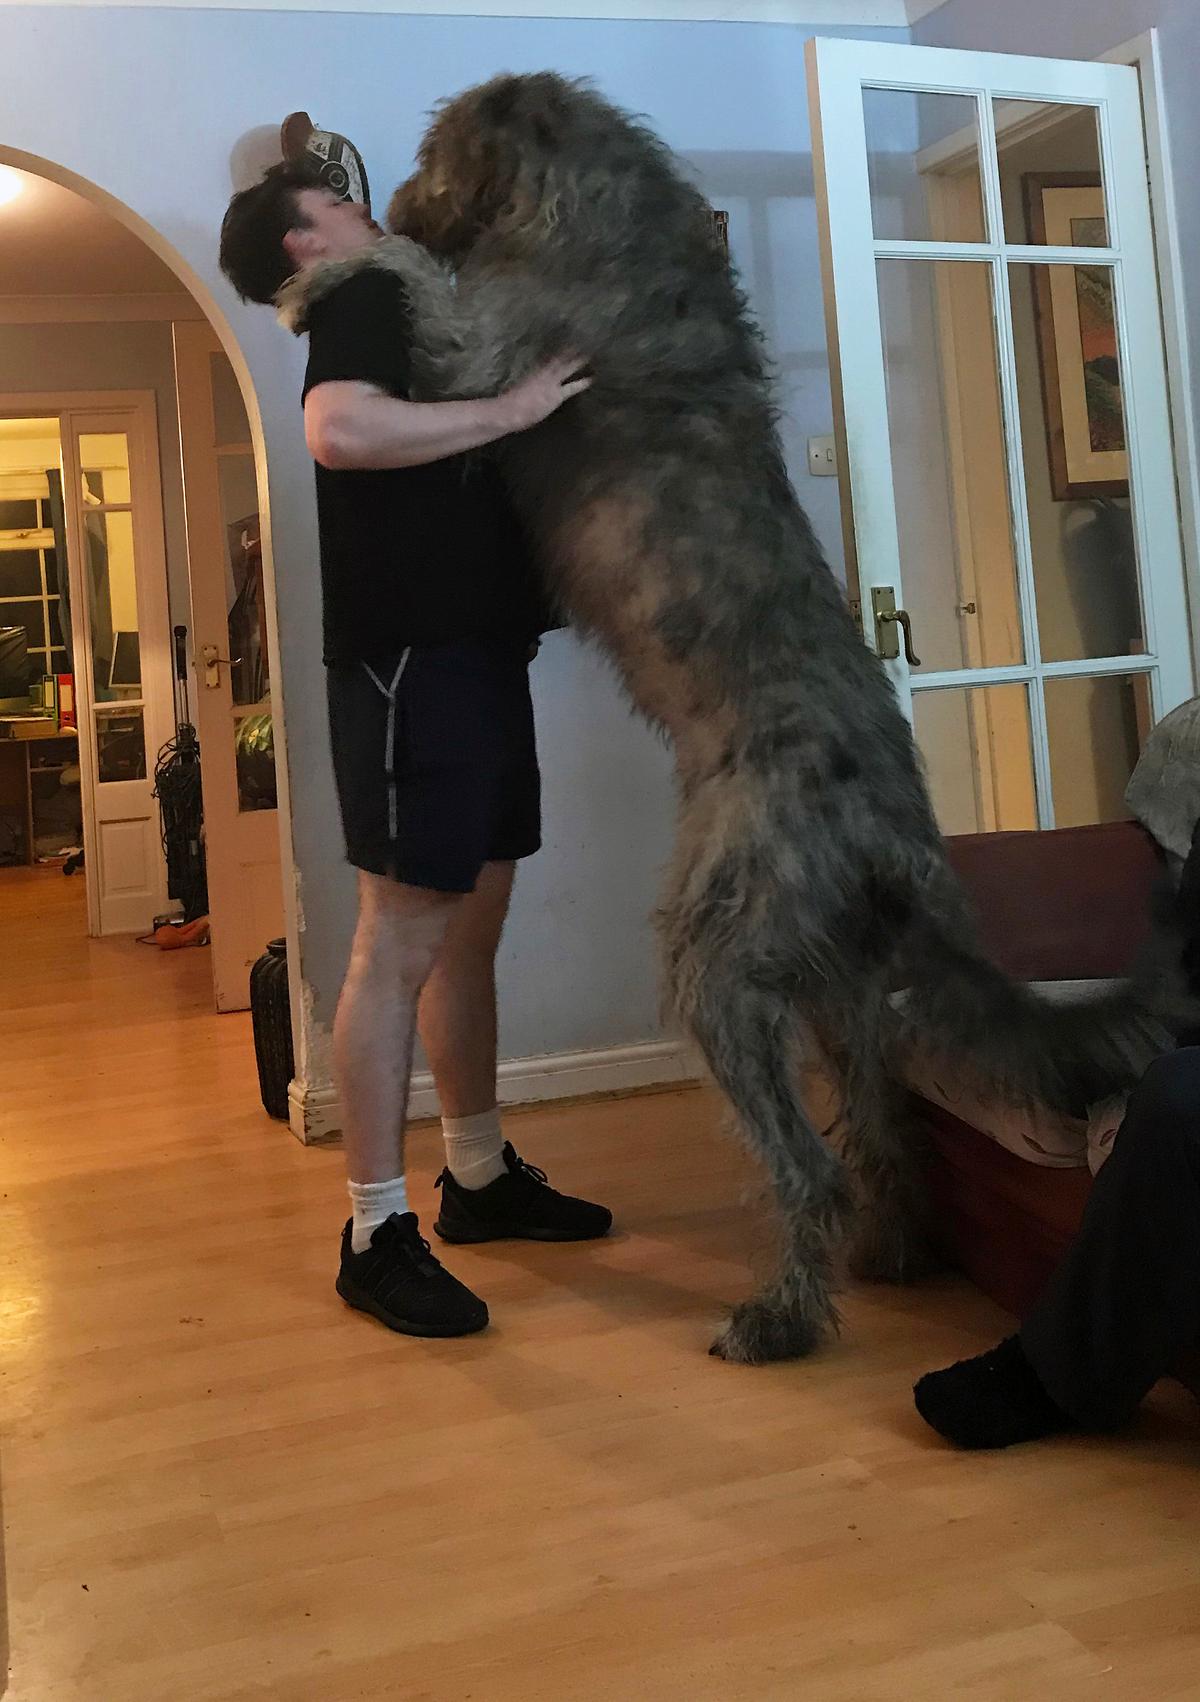 爱尔兰猎狼犬与成年人身高对比